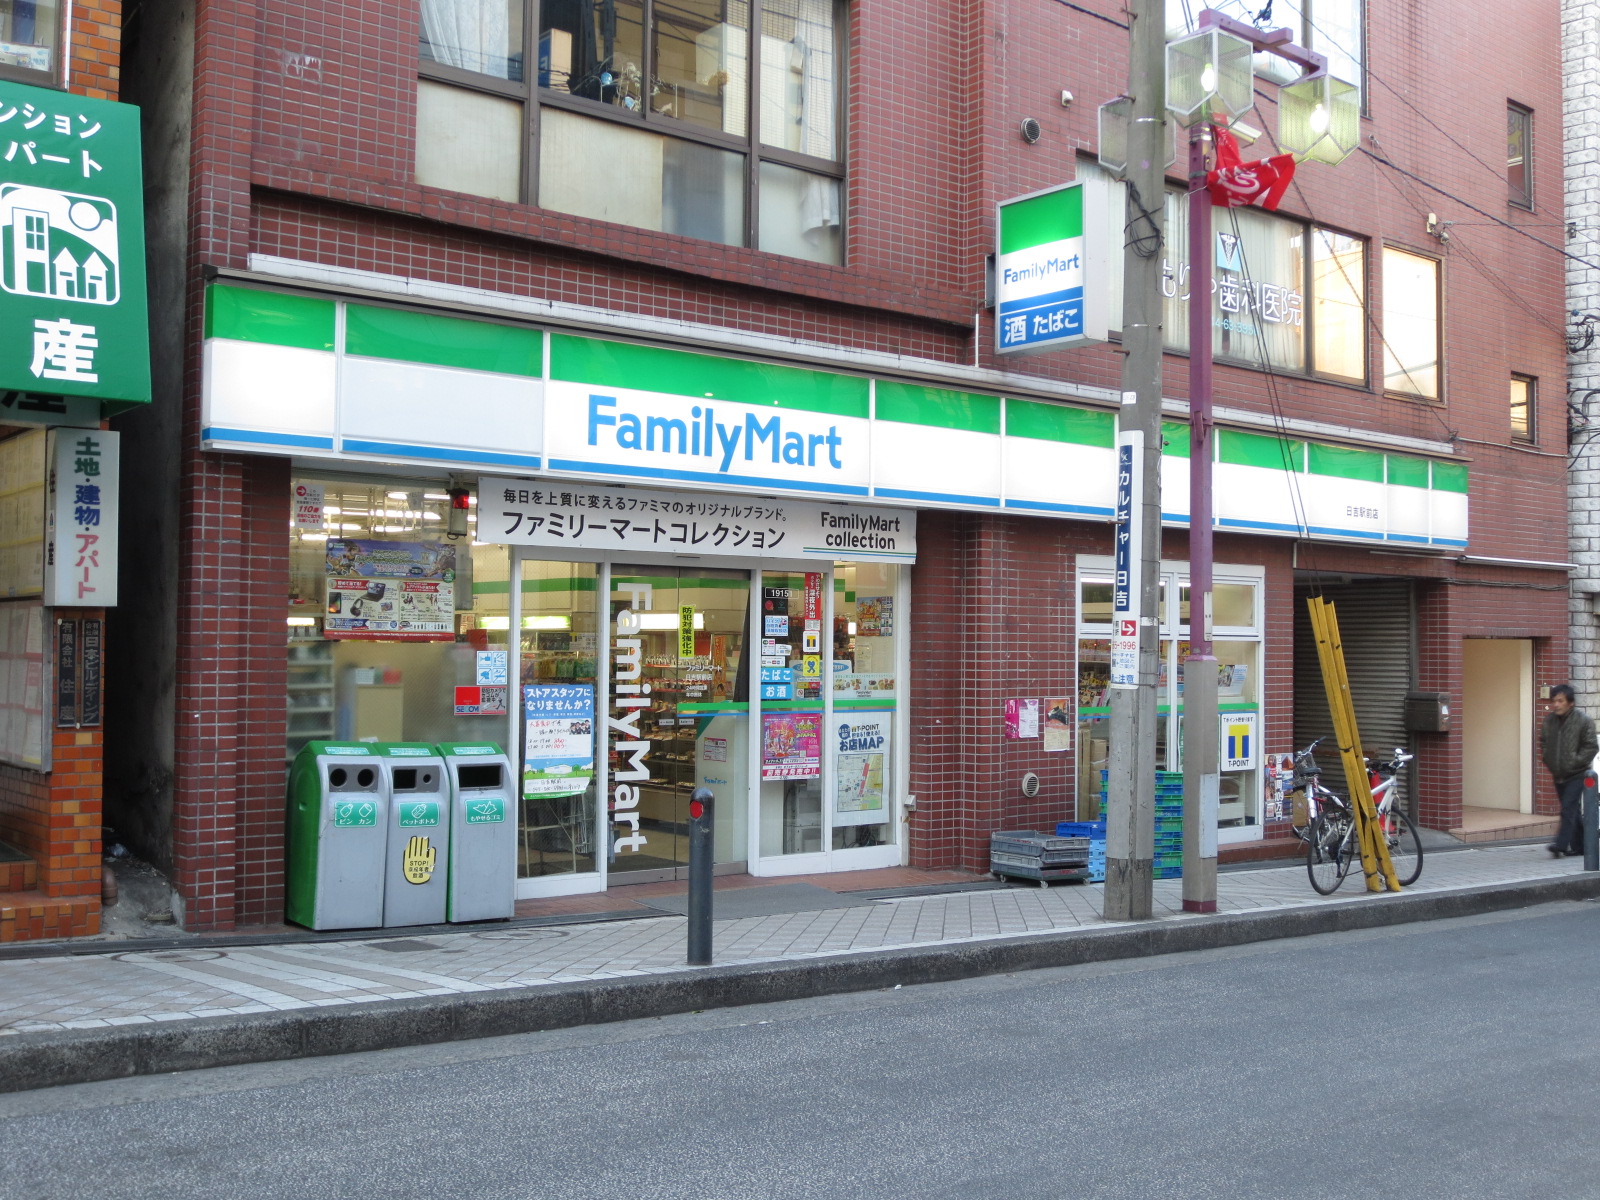 Convenience store. 483m to FamilyMart Hiyoshihon the town store (convenience store)